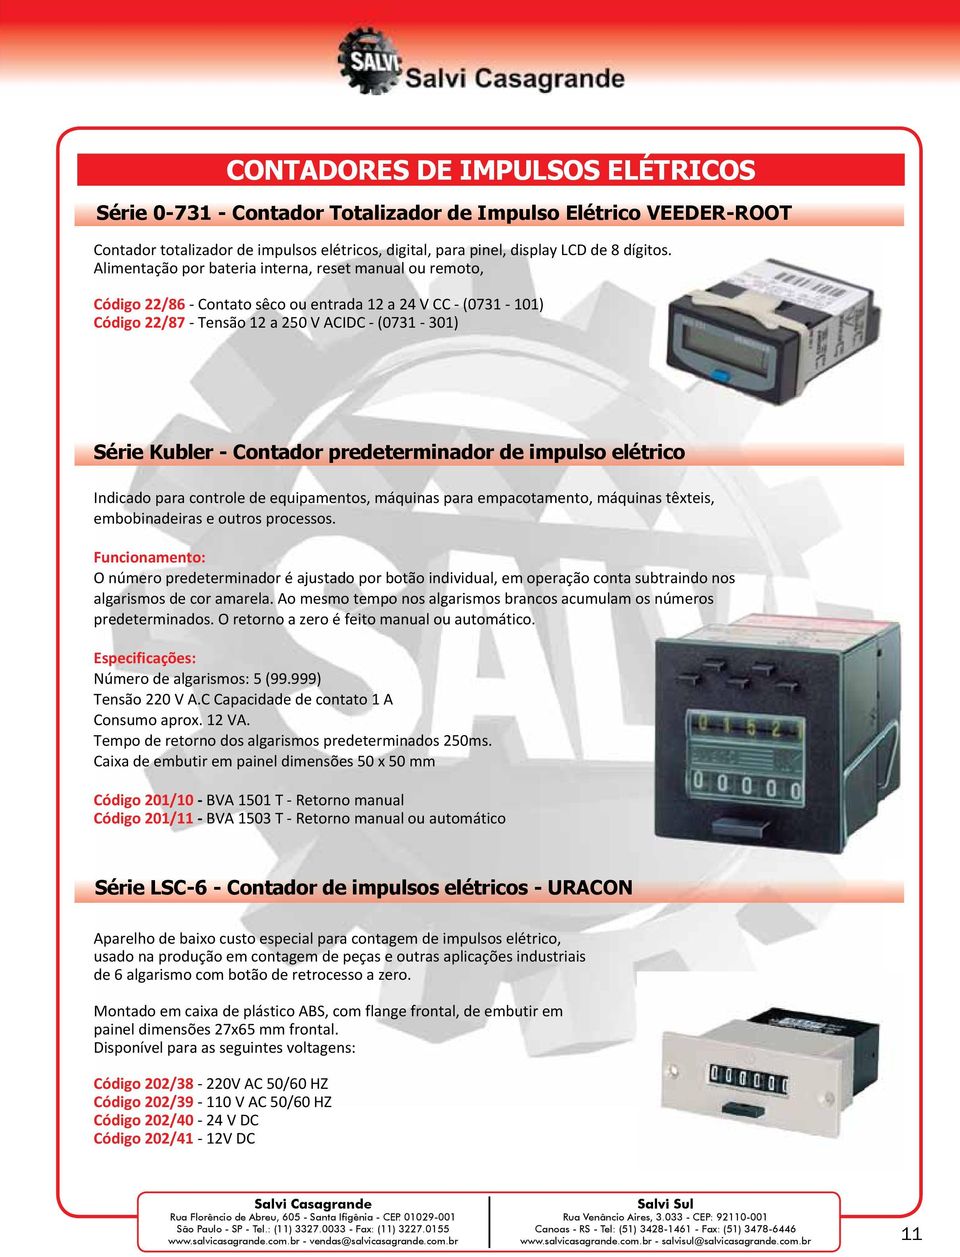 predeterminador de impulso elétrico Indicado para controle de equipamentos, máquinas para empacotamento, máquinas têxteis, embobinadeiras e outros processos.